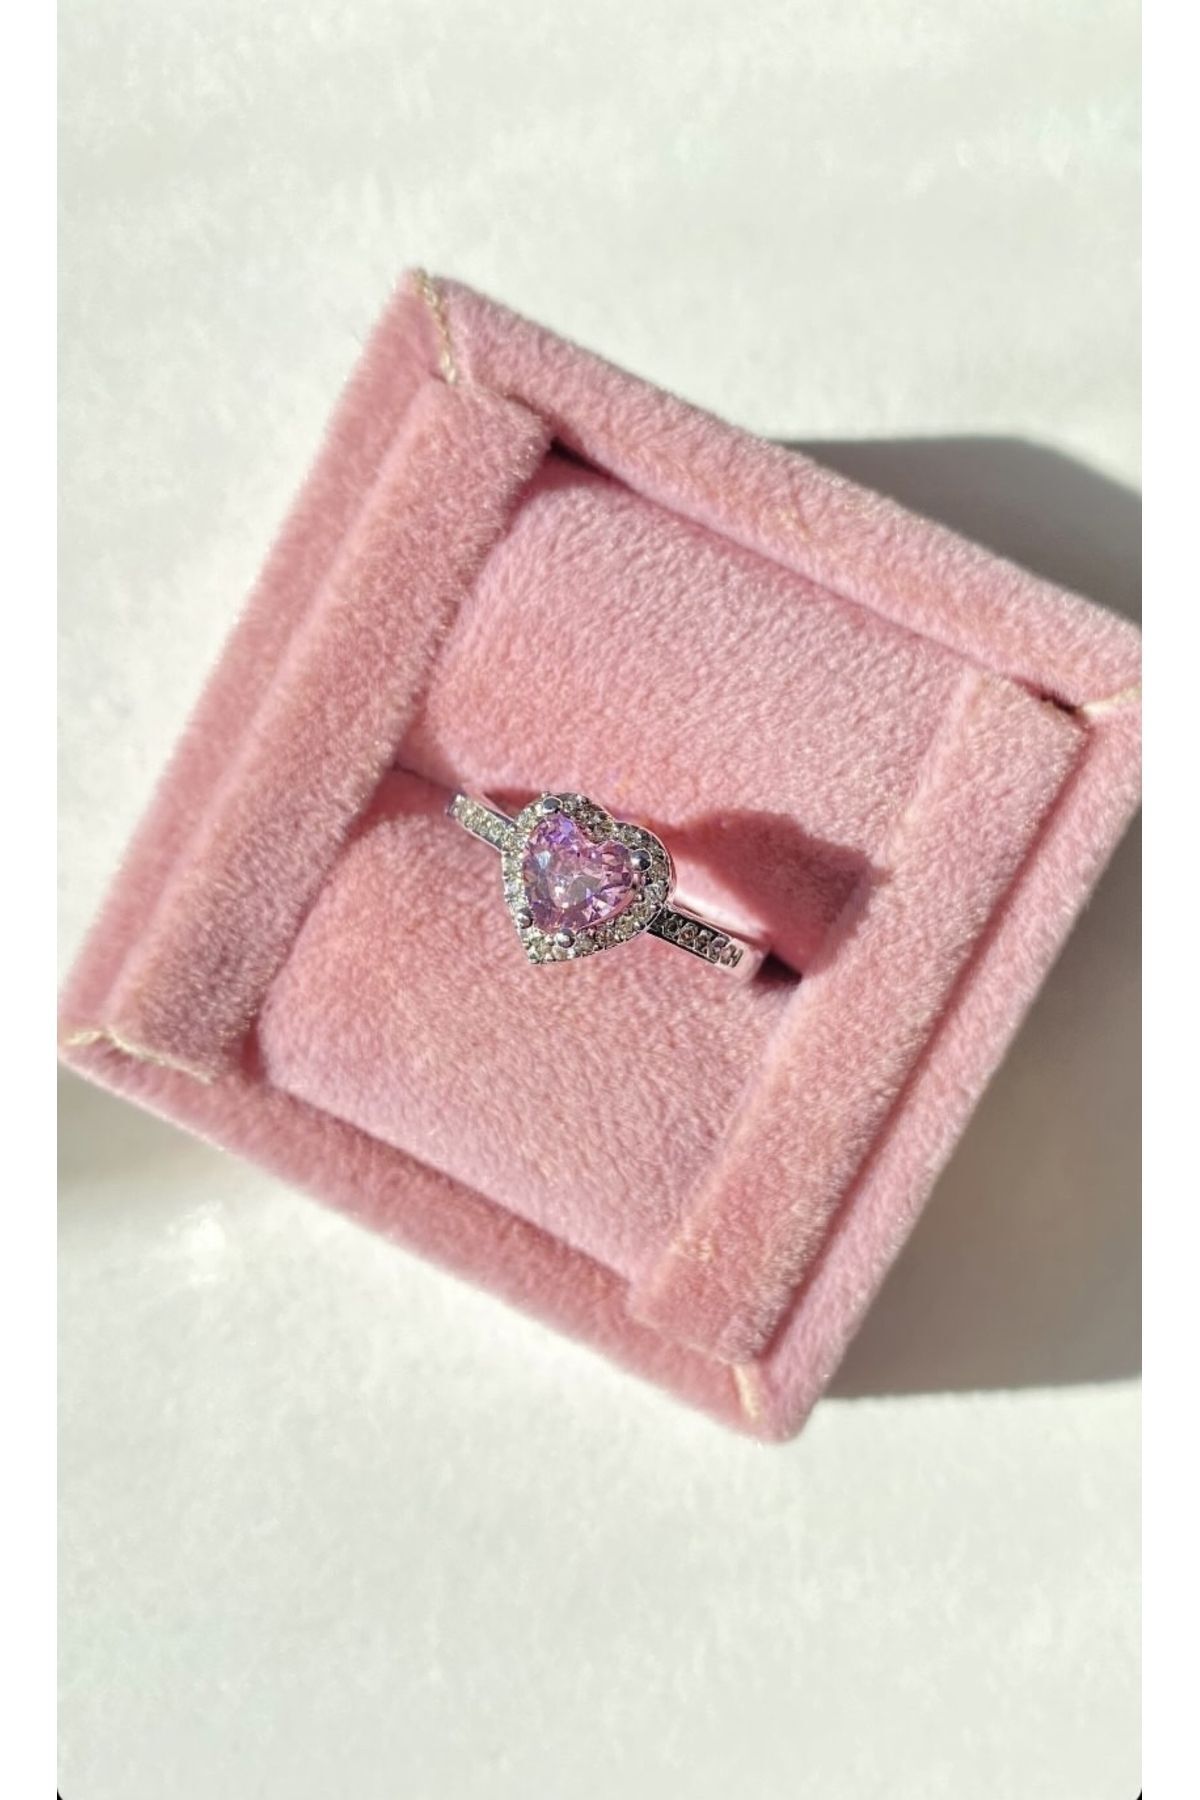 Plüton Design Kalpli ayarlanabilir ciddi ilişki yüzüğü hediye yüzük sevgiliye hediye